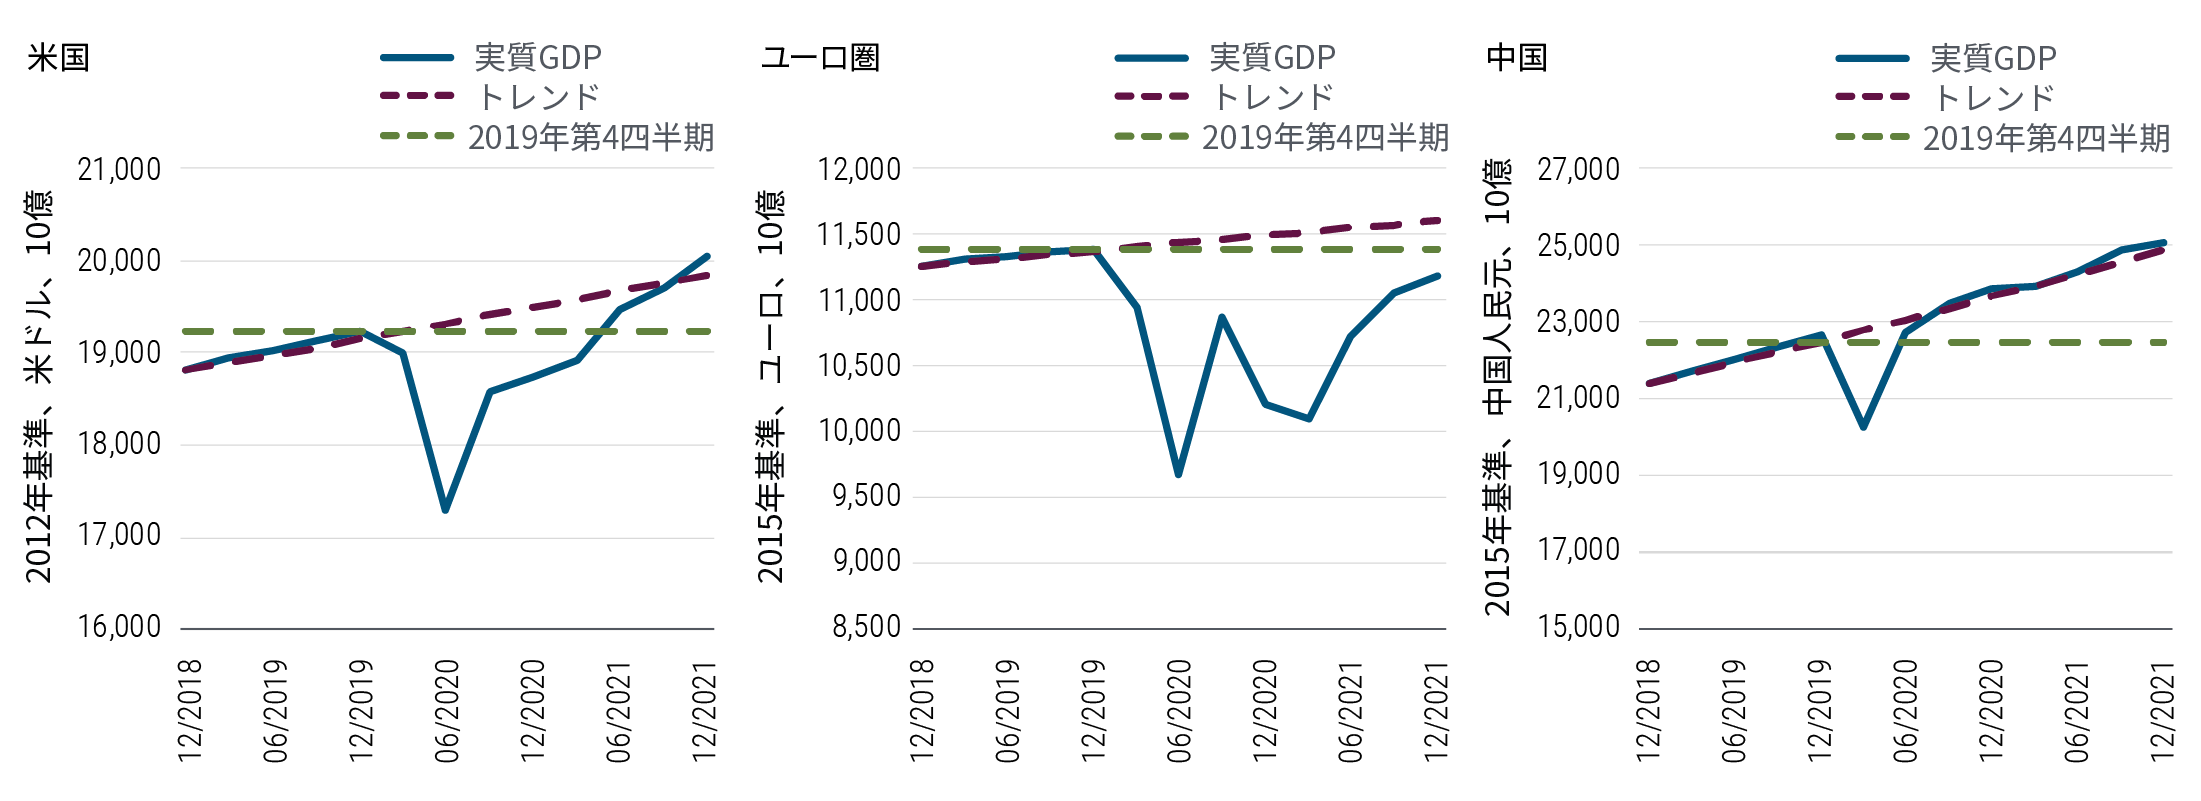 図表1は、米国、ユーロ圏、中国の主要経済国・地域における実質GDP（国内総生産）の予測経路を、GDPのトレンドと2019年第4四半期の水準との対比で示しています。2020年前半に急落した米国の実質GDPは、今年半ばに2019年第4四半期の水準に戻り、年後半にトレンドの水準に戻ると見込まれます。ユーロ圏の実質GDPは、年間を通してトレンドと2019年第4四半期の水準の両方を下回るとみられます。これに対し、中国の実質GDPは2015年基準の人民元で見ると、今年半ばには2019年の水準に戻る見通しです。既にトレンドの水準には戻っており、年末までに25兆人民元を上回る軌道に乗っています。